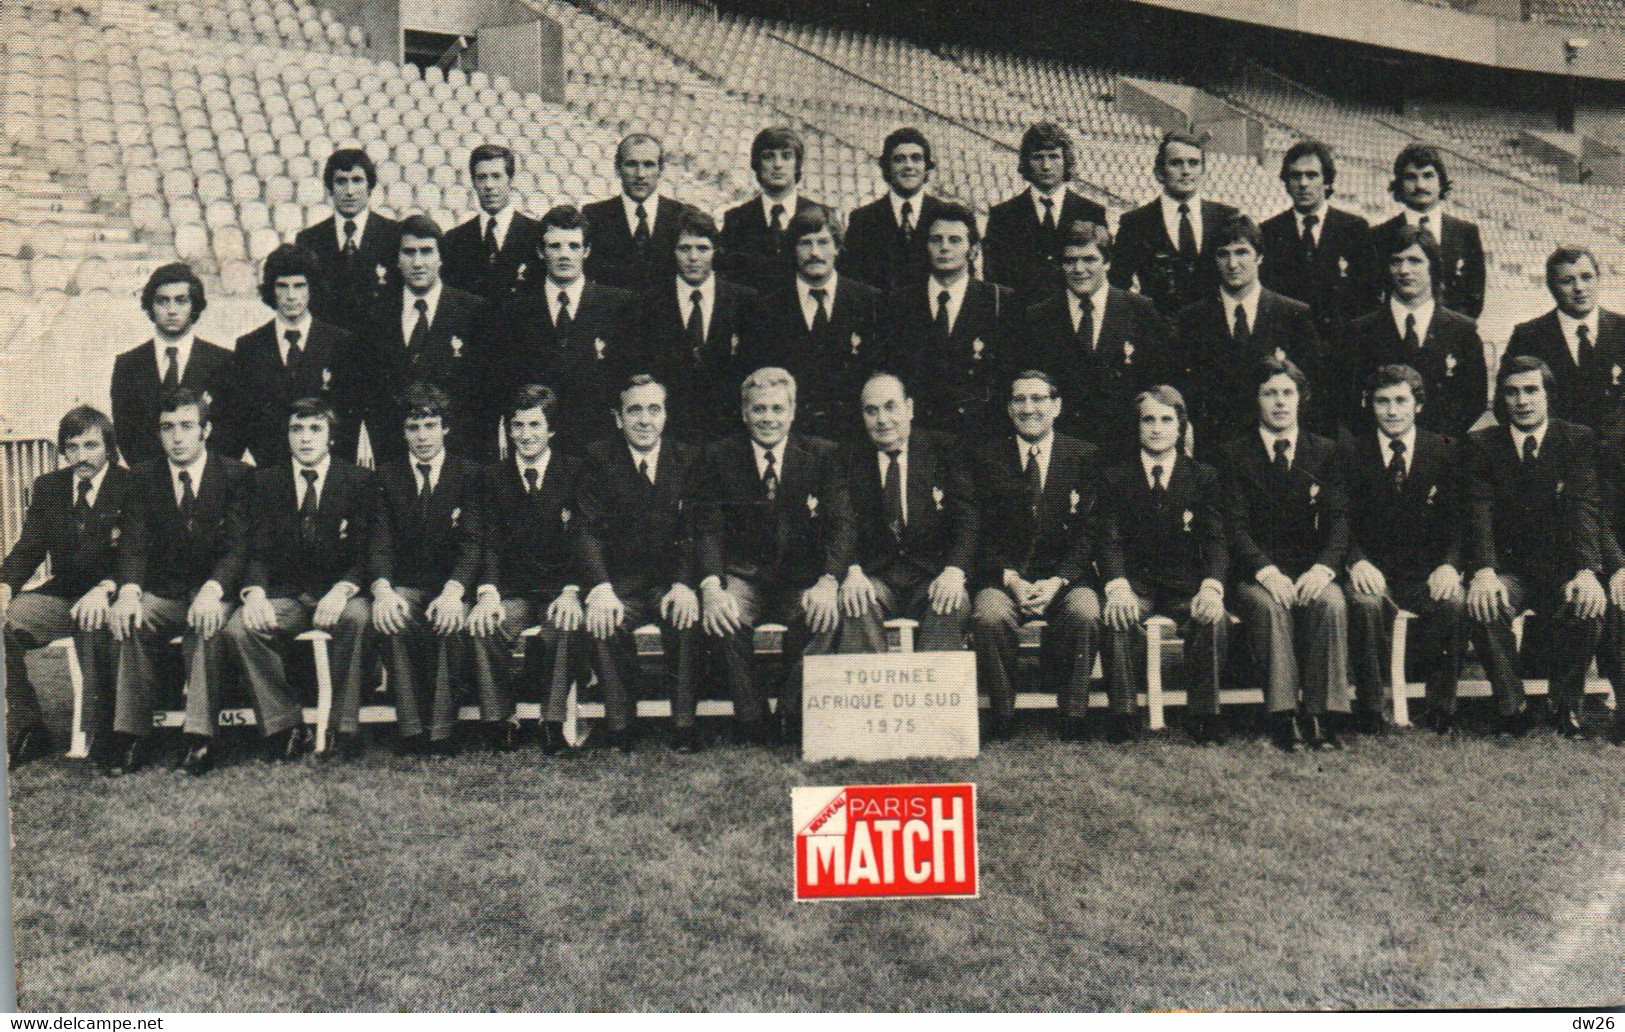 Photo De Groupe: Equipe De France De Rugby, Tournée Afrique Du Sud 1975 - Publicité Paris Match - Sports